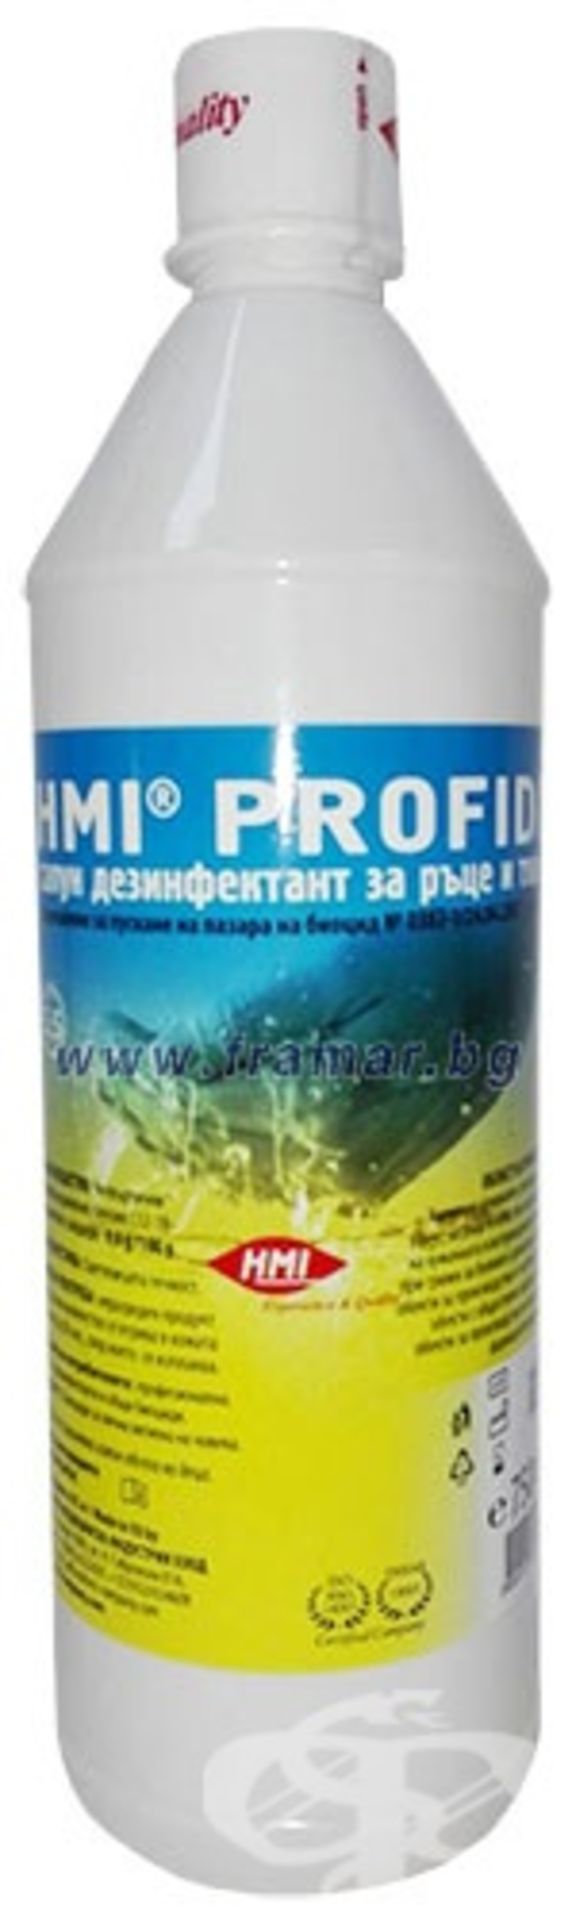 50 x Profidi Liquid Soap Disinfectant For Hands and Skin - Bild 6 aus 9